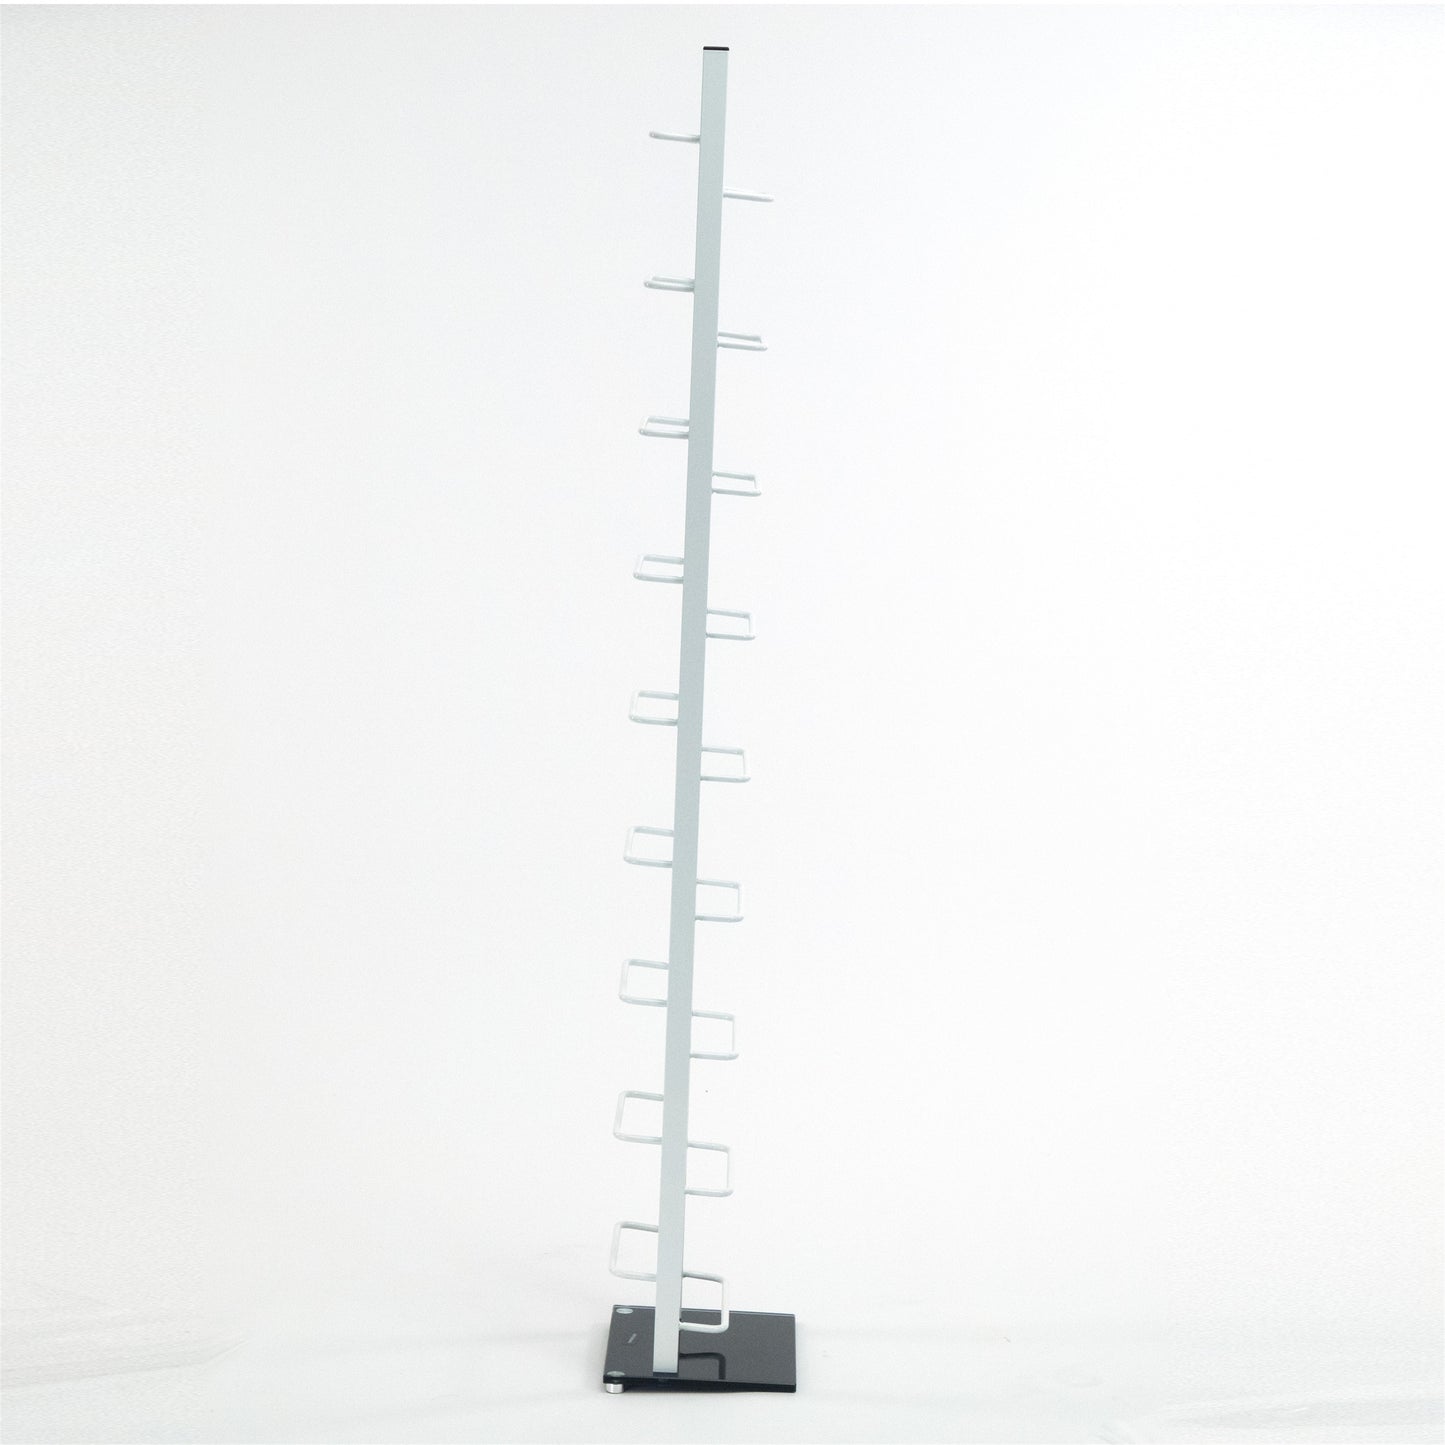 DESIGN CD STÄNDER "TOWER" | 138 cm, Metall | für 126 CDs